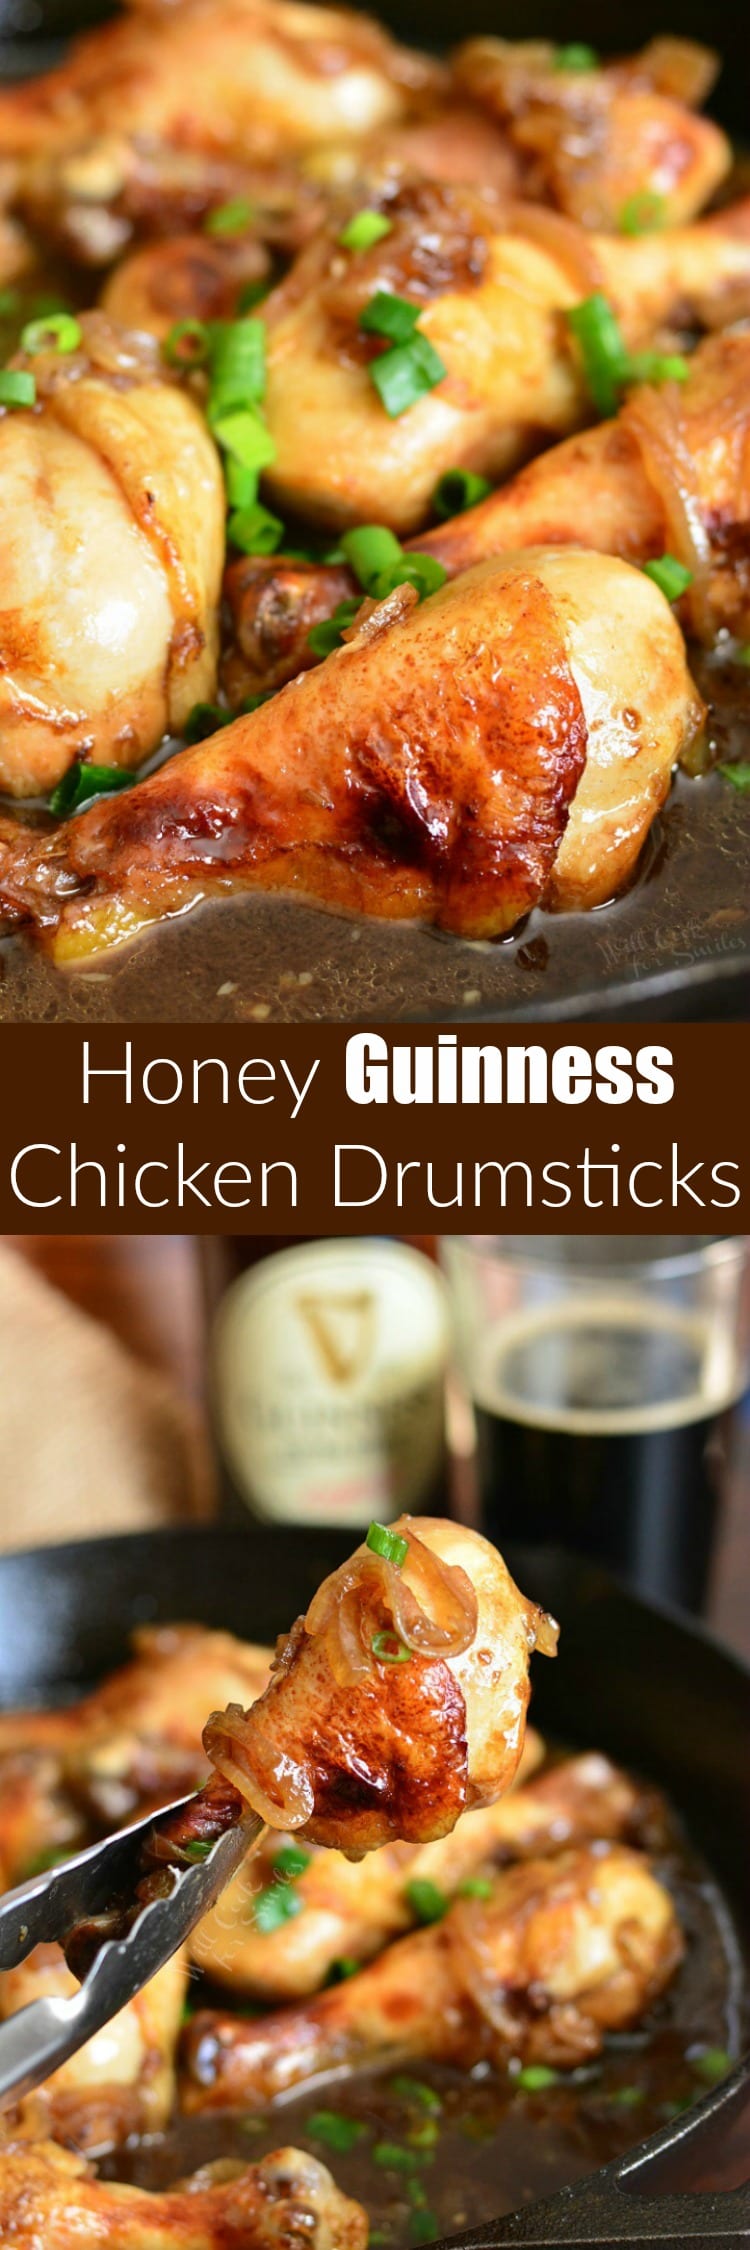 Honey Guinness Chicken Drumsticks collage 